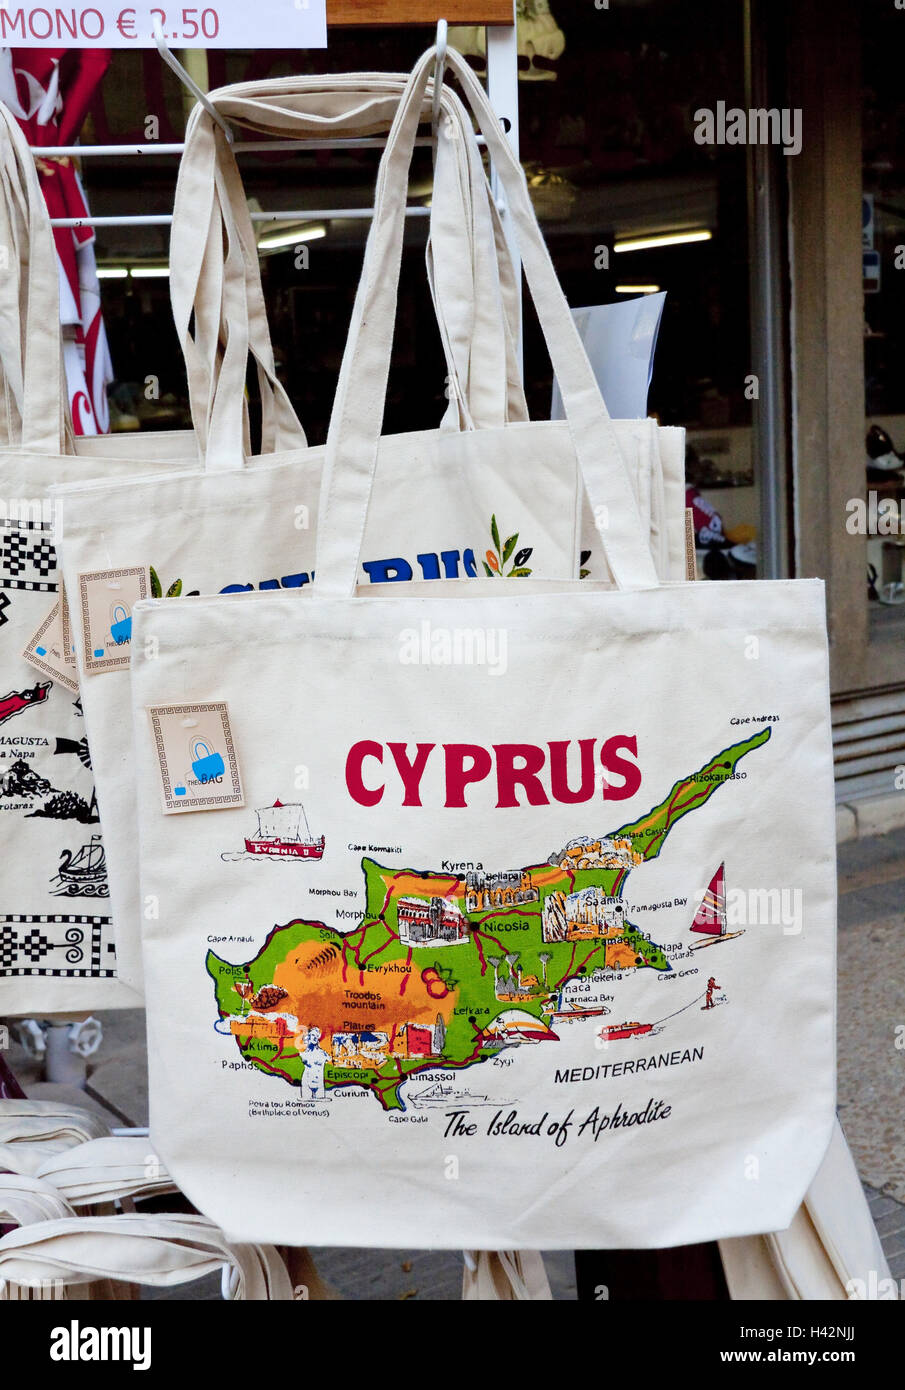 Cyprus, souvenir business, substance pouches, Stock Photo